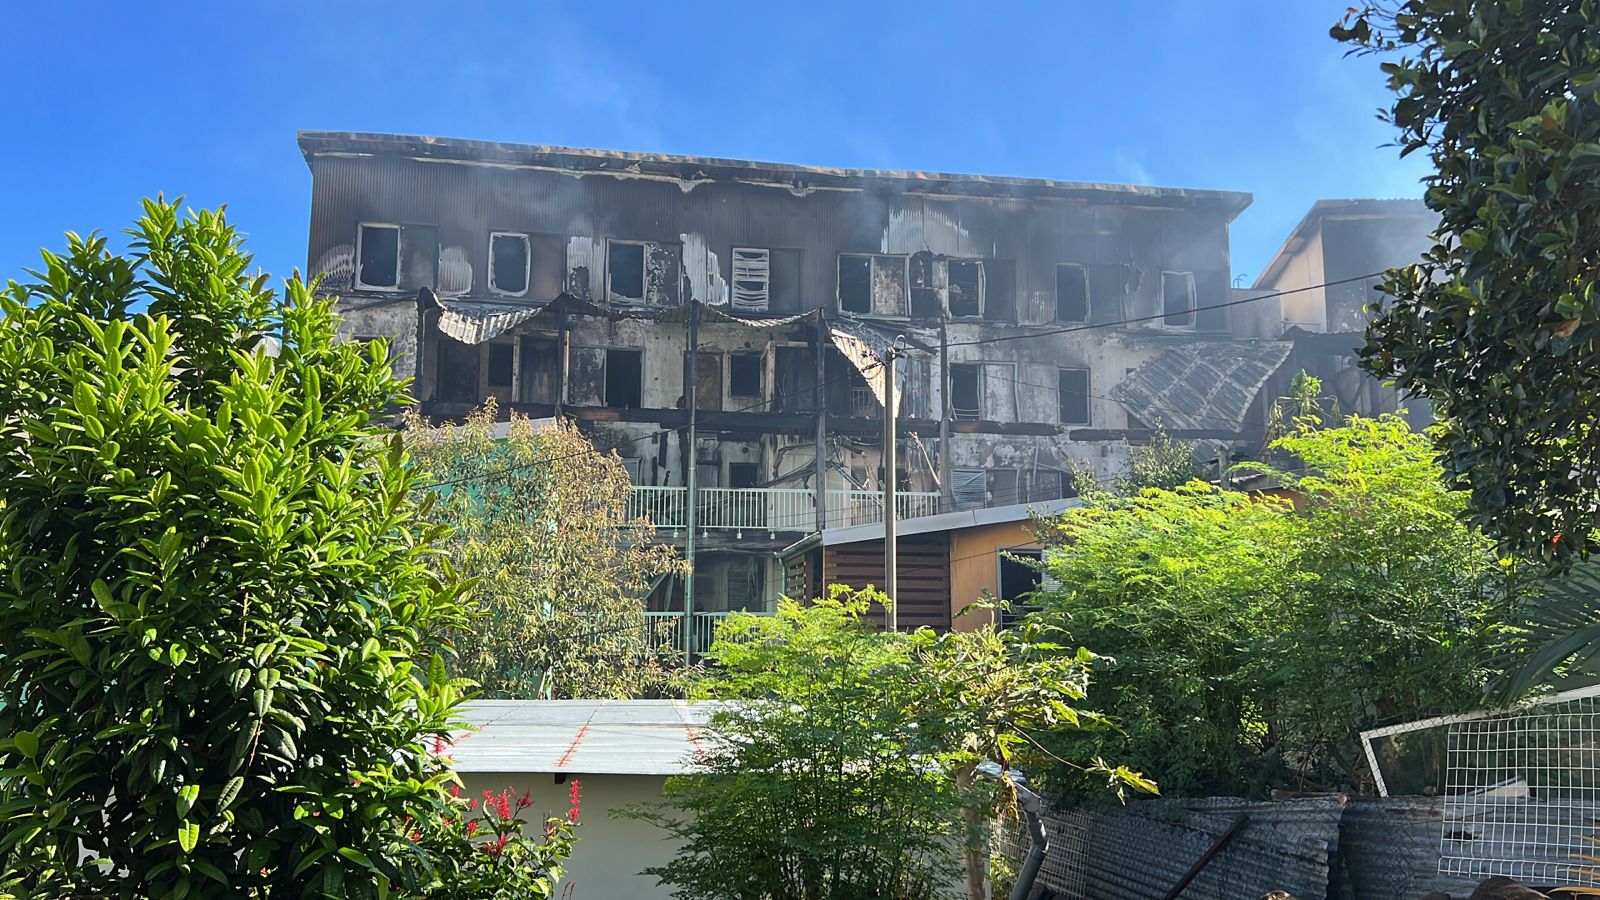 Immeuble incendié à St-Denis : 3 personnes interpellées